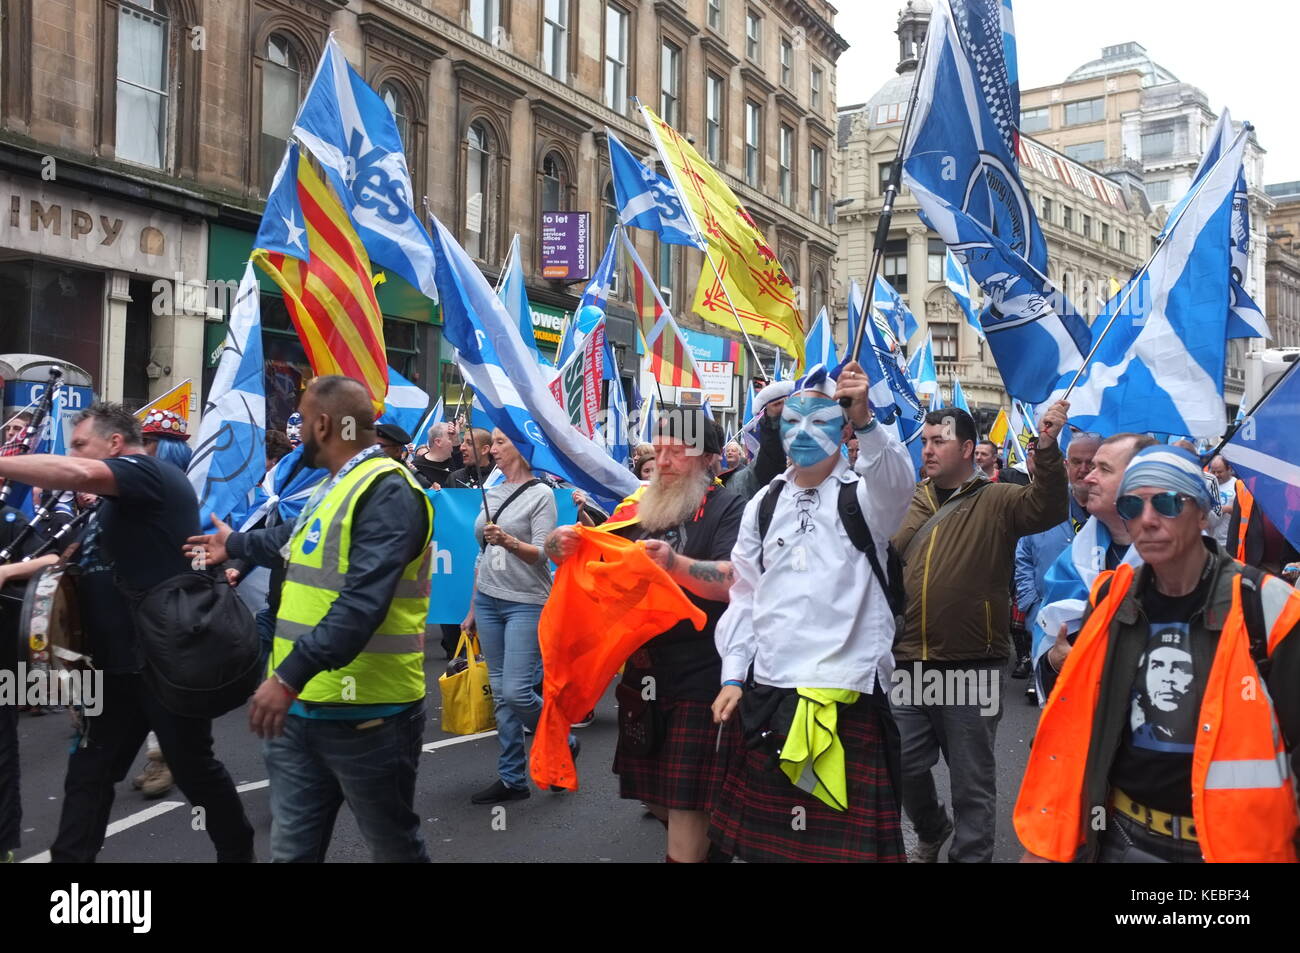 Pro-indépendance rallye organisé par l'espoir sur la peur, Glasgow, Ecosse, Royaume-Uni. 16 septembre 2017. Banque D'Images